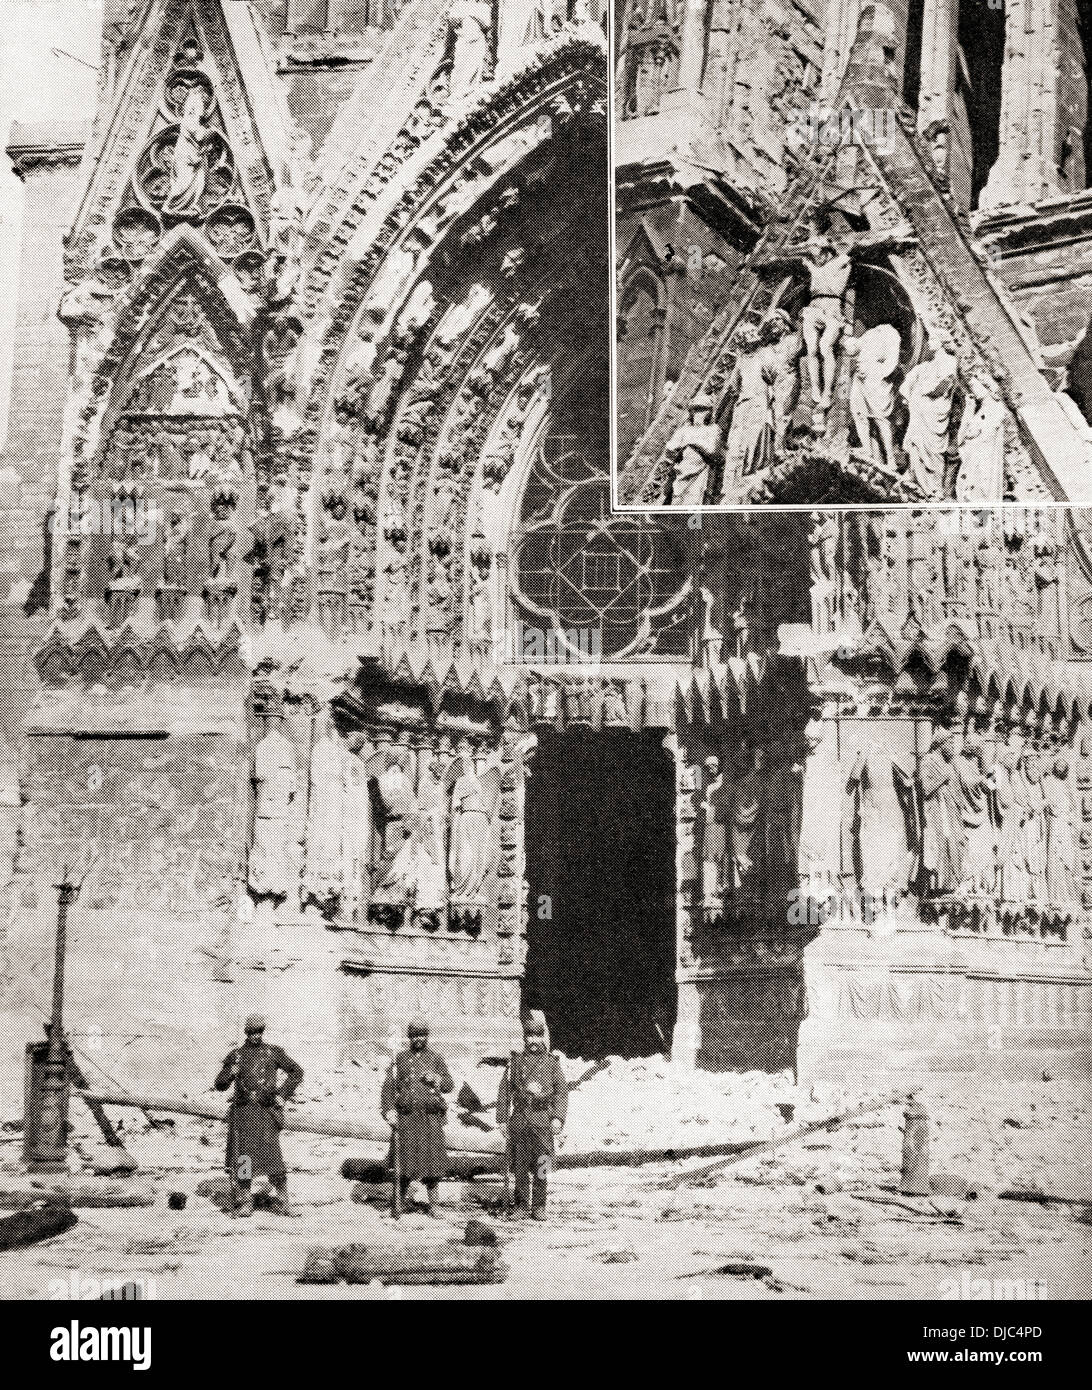 Dommages causés à la cathédrale de Reims, France par des obus allemands durant la PREMIÈRE GUERRE MONDIALE. À partir de la guerre d'album Deluxe, publié en 1915. Banque D'Images